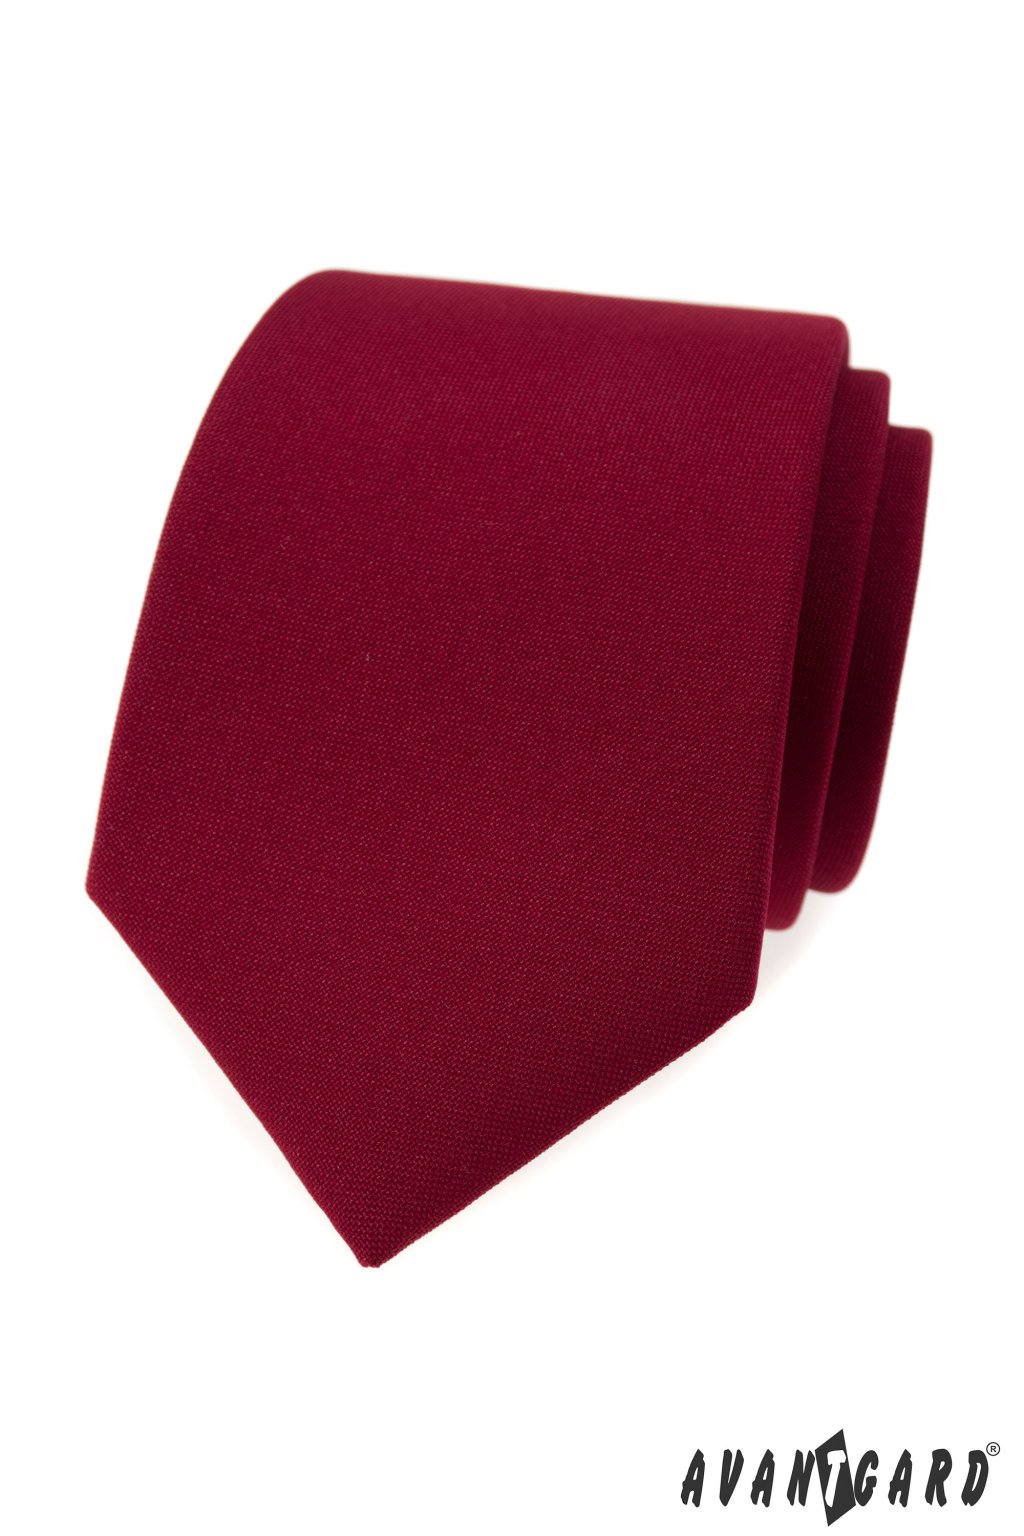 Bordó luxusní kravata jednobarevná 561 - 9853